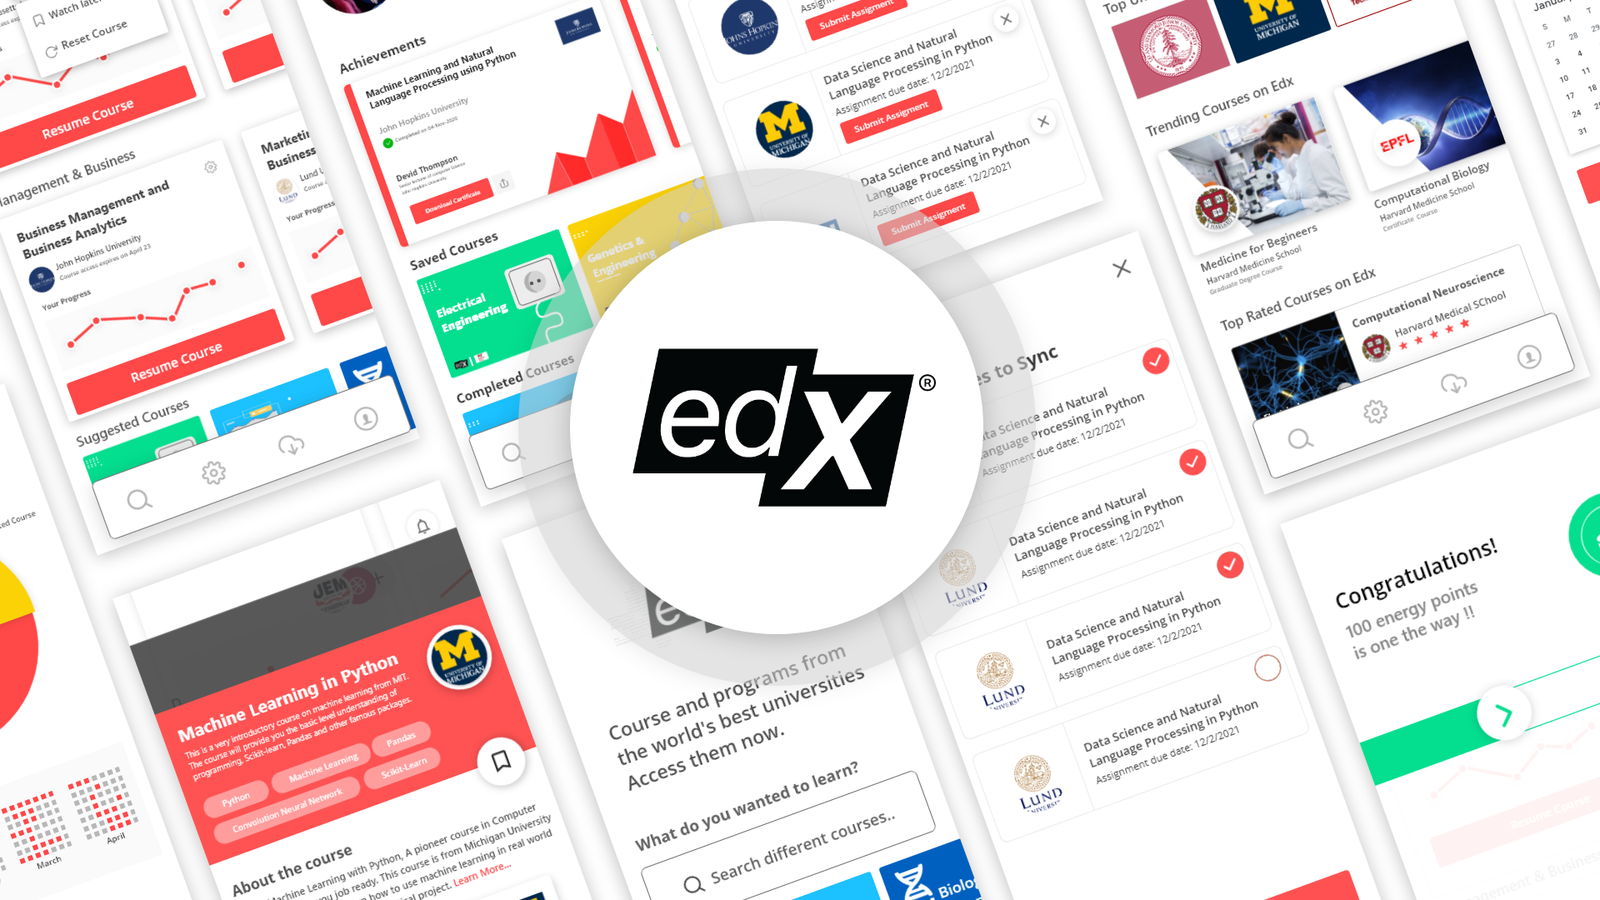 edx app review 2021 | excellent online learning platform - appedus